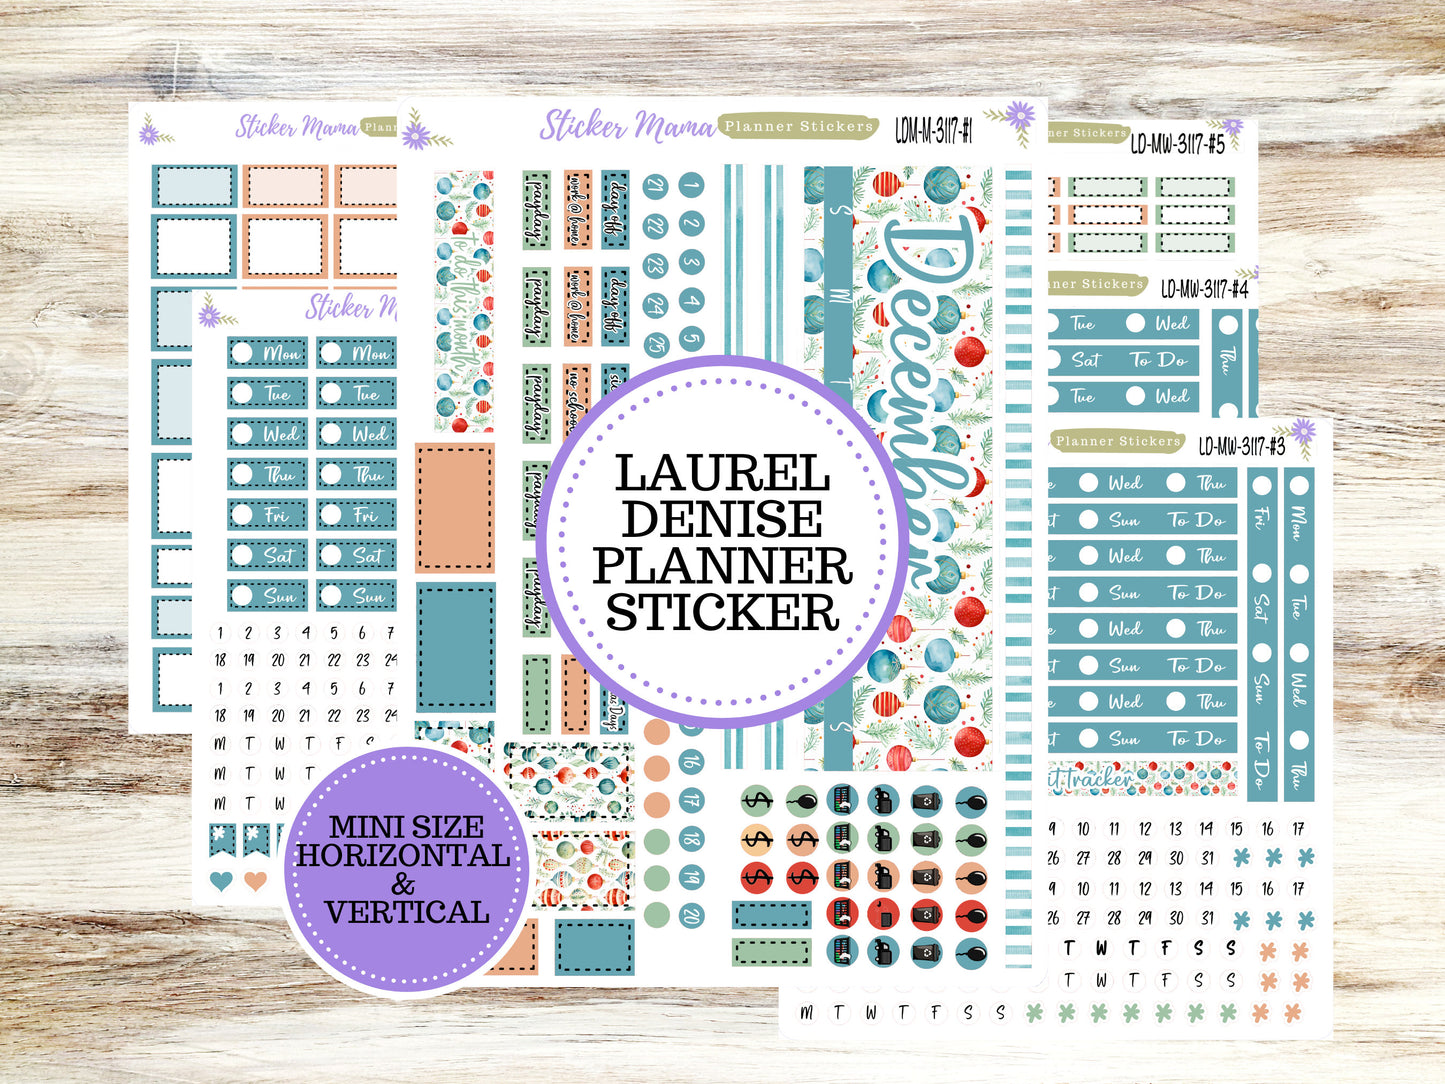 LAUREL DENISE MINI Planner Kit #3117 || Laurel Denise Kit || Laurel Denise Stickers || Laurel Denise Horizontal Vertical || December